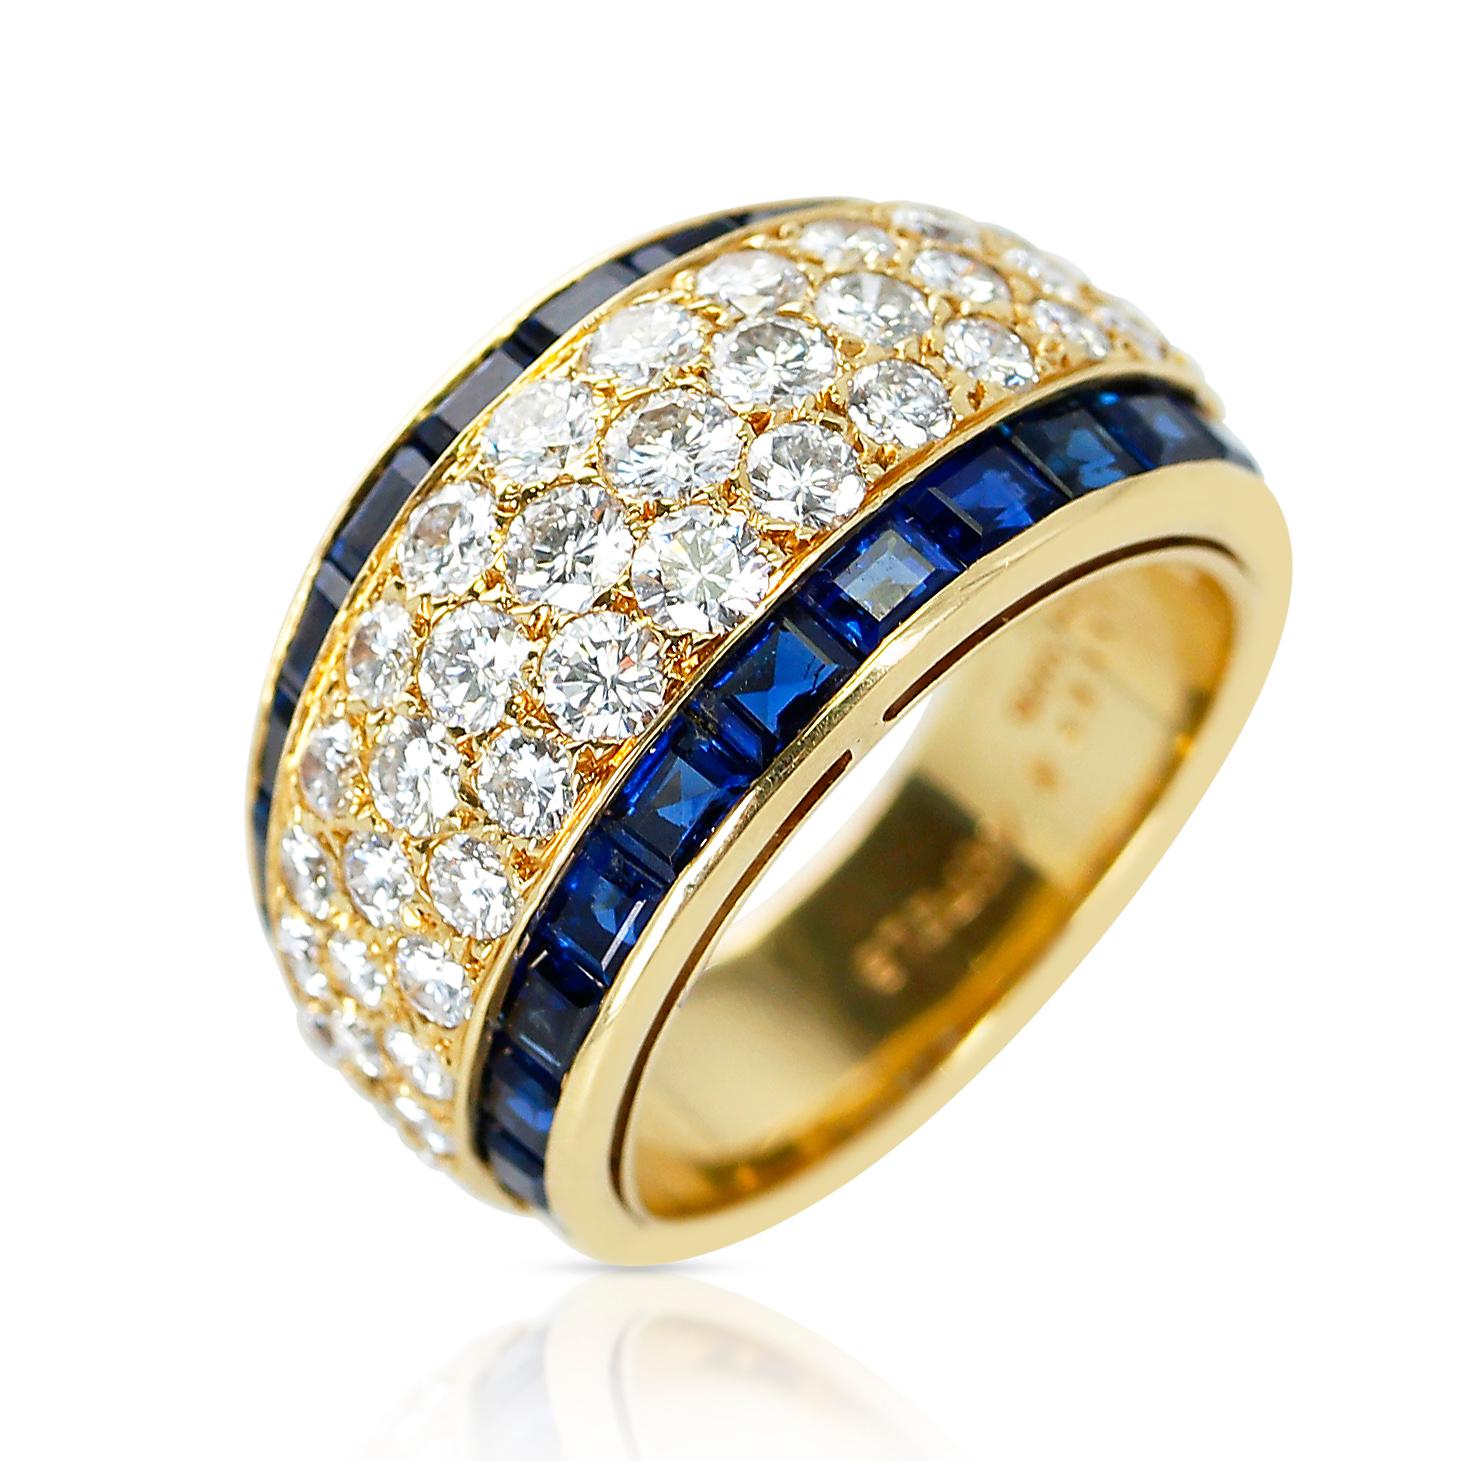 Van Cleef & Arpels Dreireihiger Diamantring mit unsichtbar gefassten Saphiren, hergestellt in Frankreich. 18 Karat Gelbgold. Ring Größe US 6. Gesamtgewicht: 9,37 Gramm. 